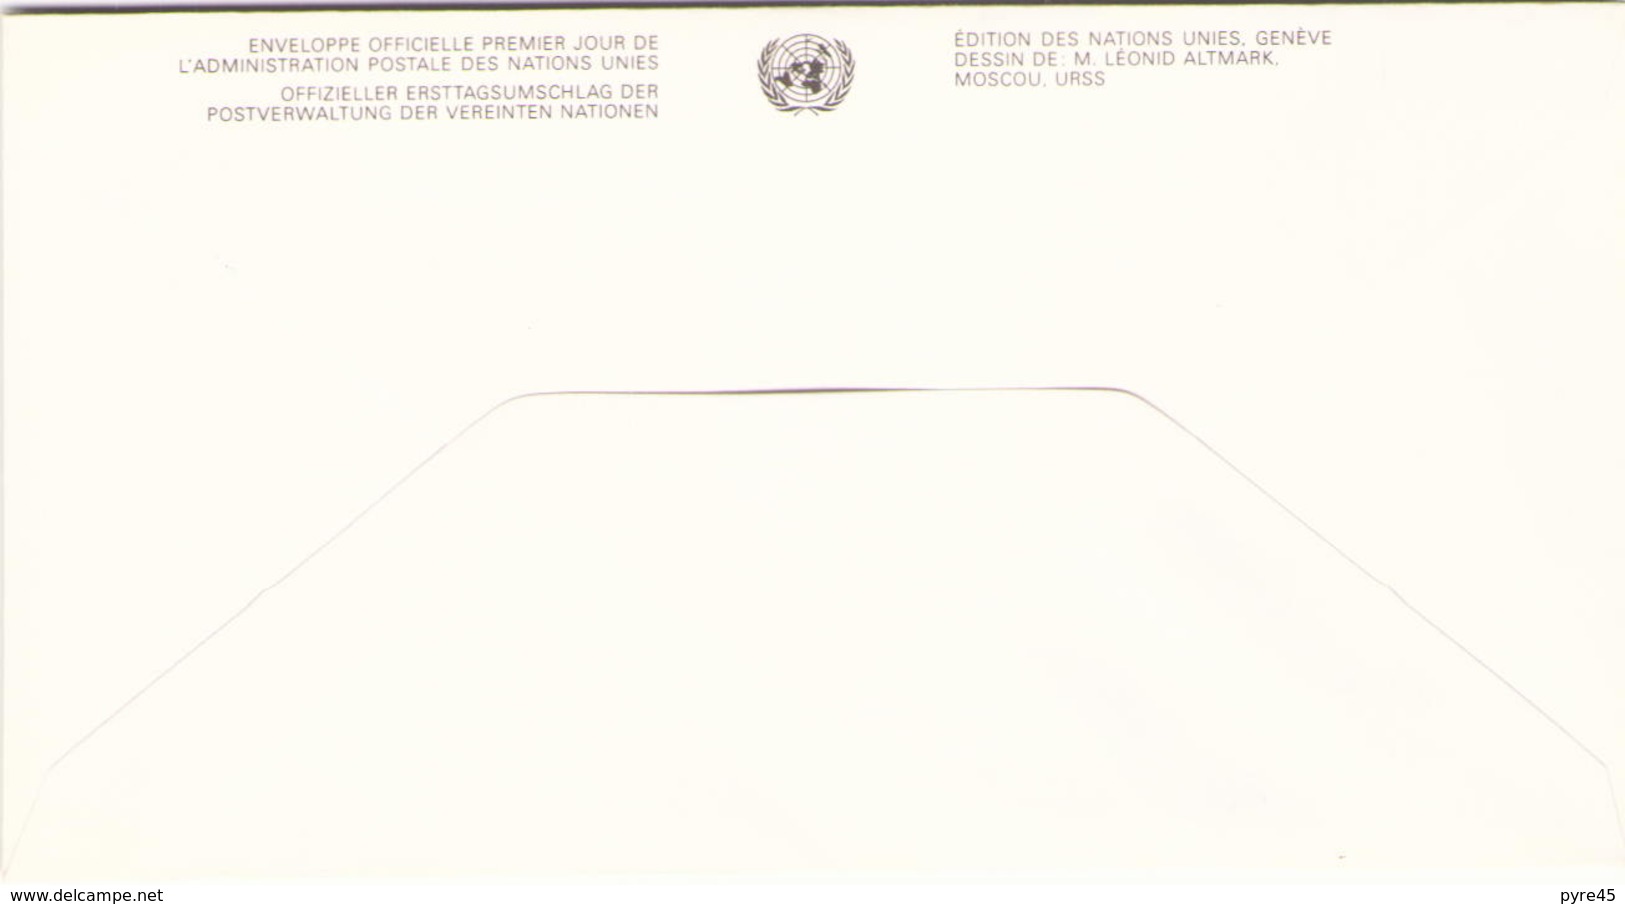 NATIONS UNIES FDC DU 20 NOVEMBRE 1991 VIENNE SERIE DES DROITS DE L HOMME - Cartas & Documentos